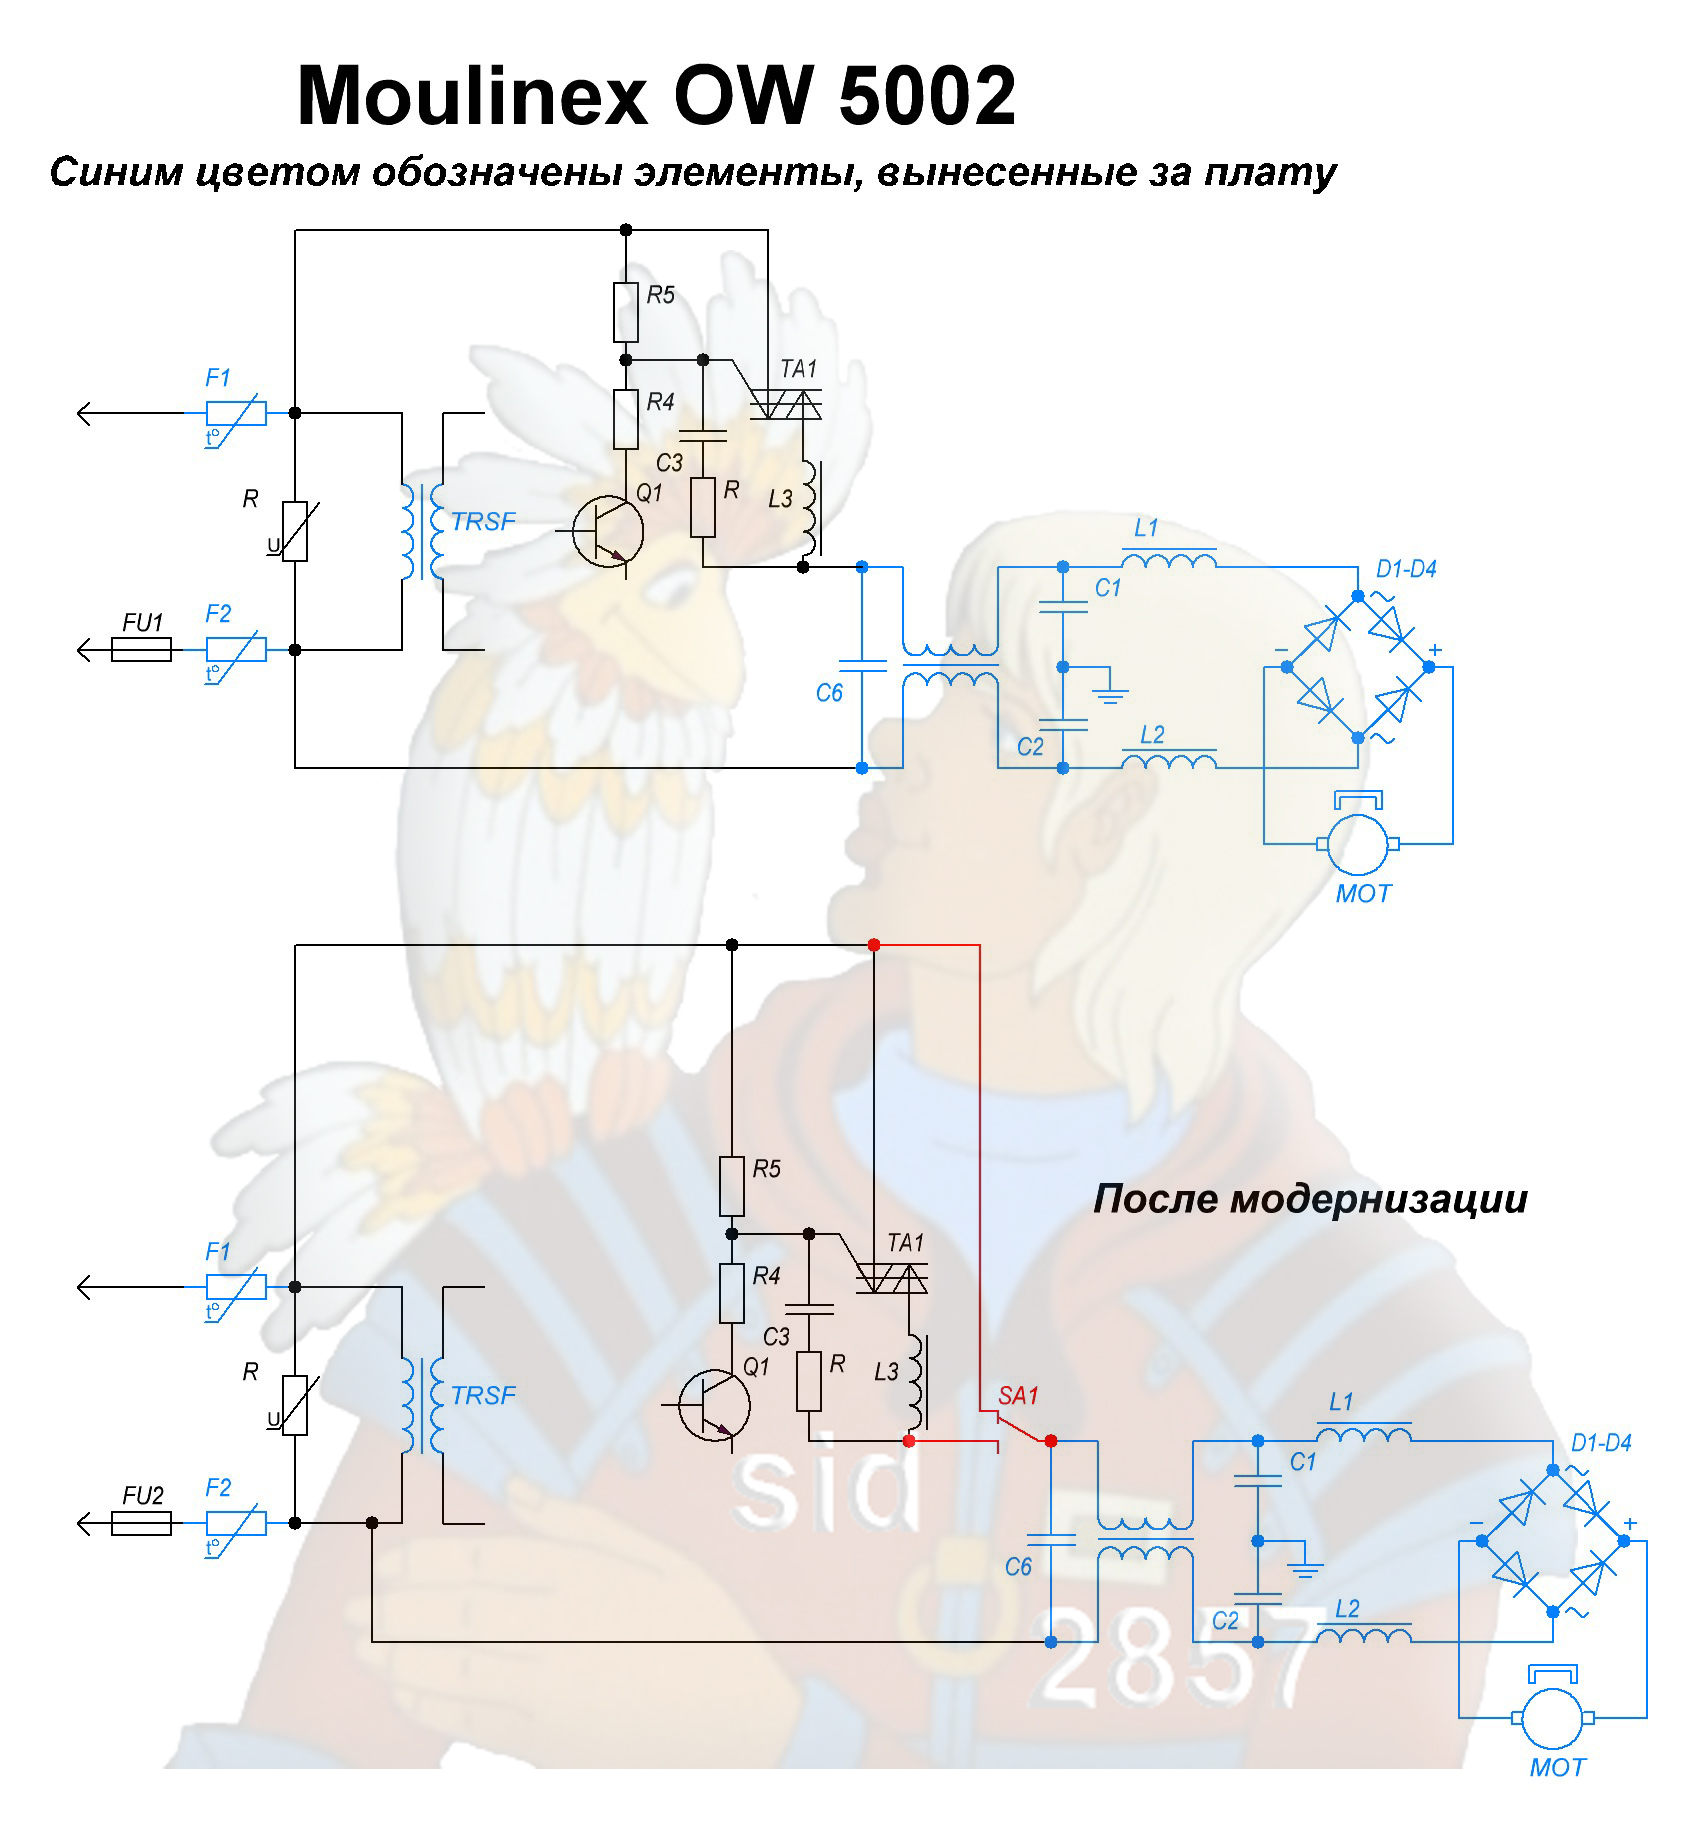 Reparatie van motorstop HP Moulinex 5002